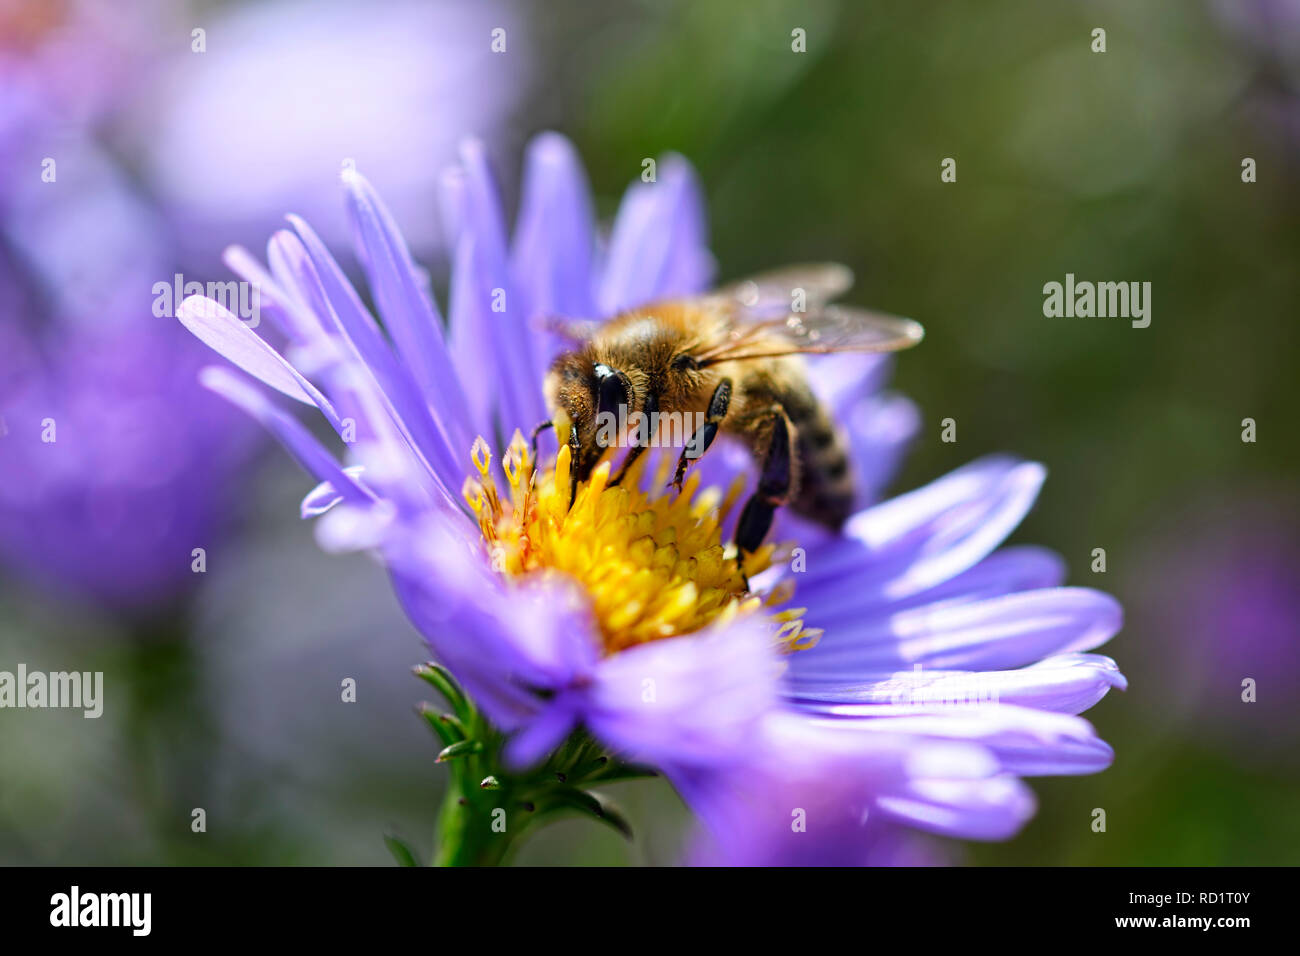 Honeybee (Apis mellifera) on a blossom, Honigbiene (Apis mellifera) auf einer Blüte Stock Photo